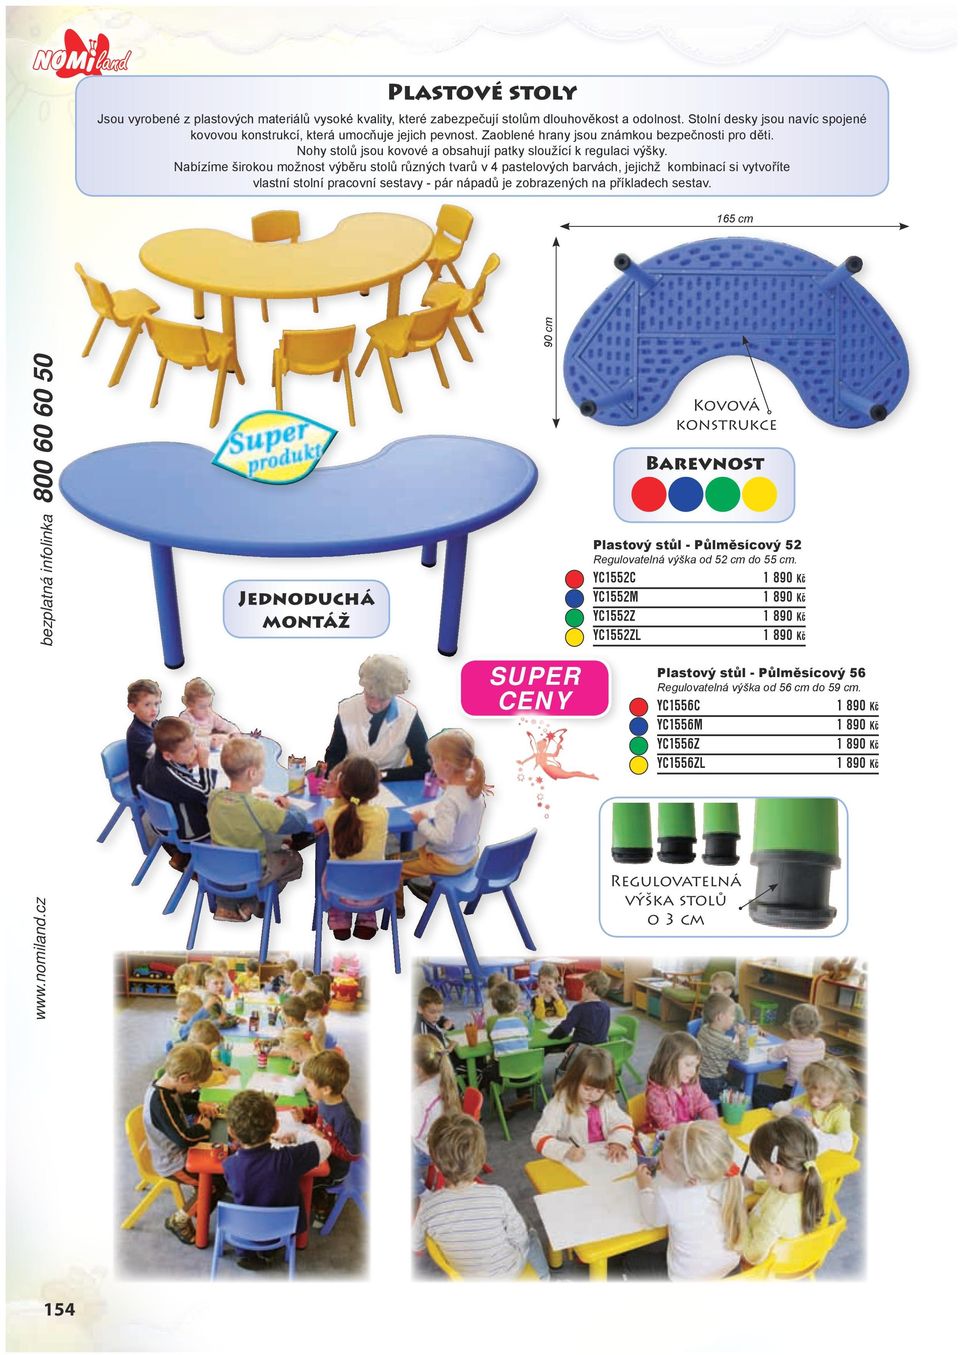 Nabízíme širokou možnost výběru stolů různých tvarů v 4 pastelových barvách, jejichž kombinací si vytvoříte vlastní stolní pracovní sestavy - pár nápadů je zobrazených na příkladech sestav.